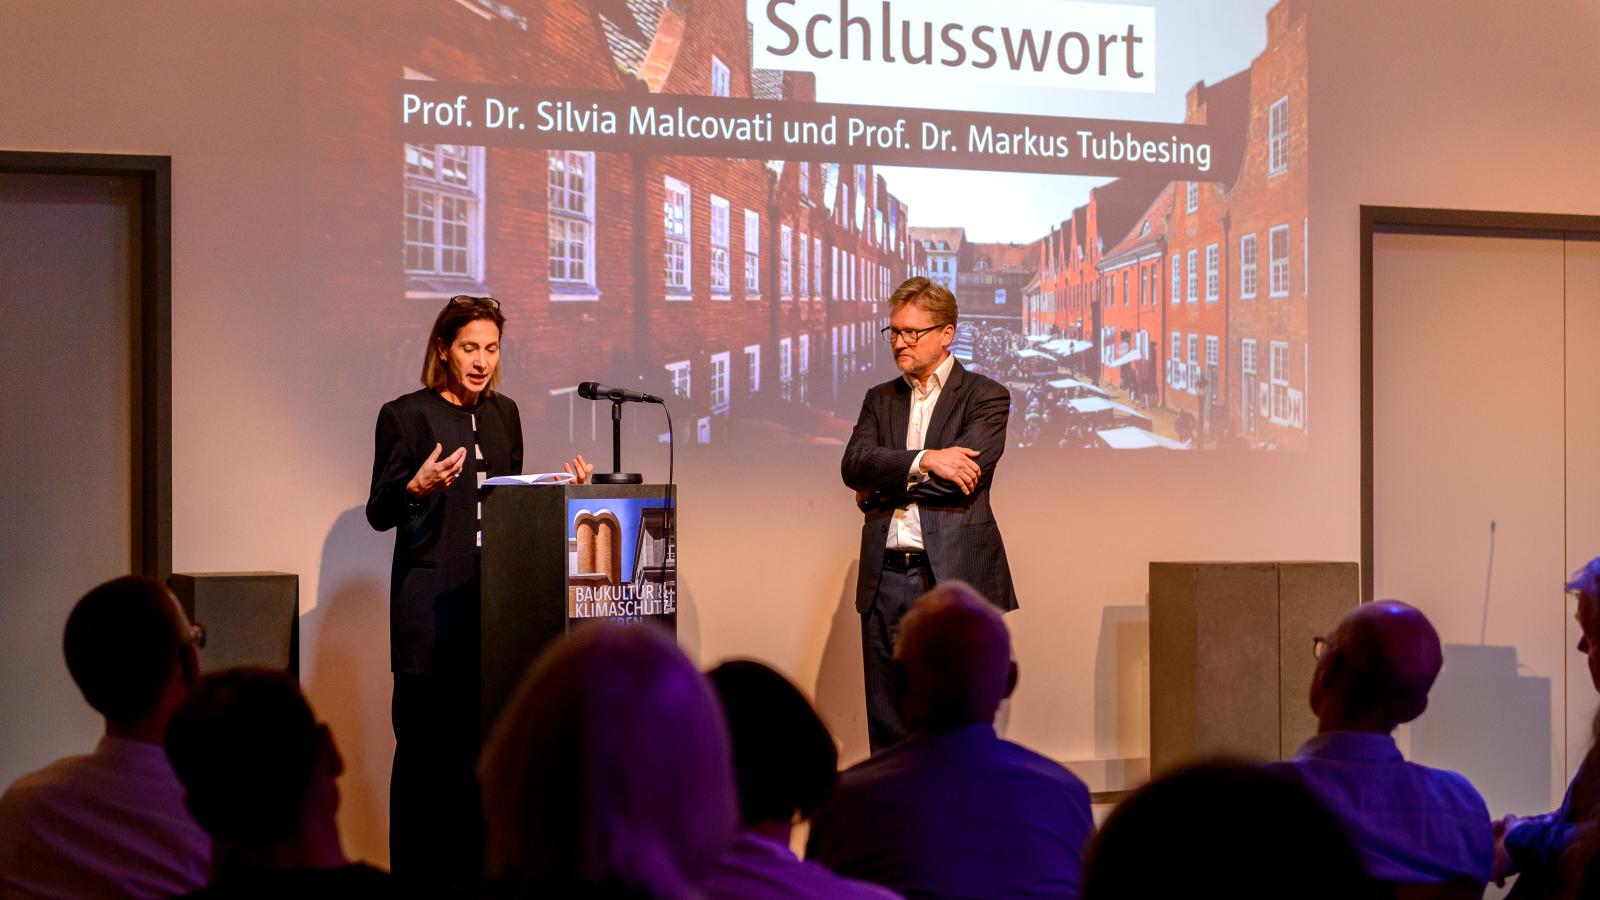 Prof. Dr. Silvia Malcovati und Prof Dr. Markus Tubbesing bei ihrem Schlusswort der 3. Veranstaltung der Reihe Baukultur und Klimaschutz leben